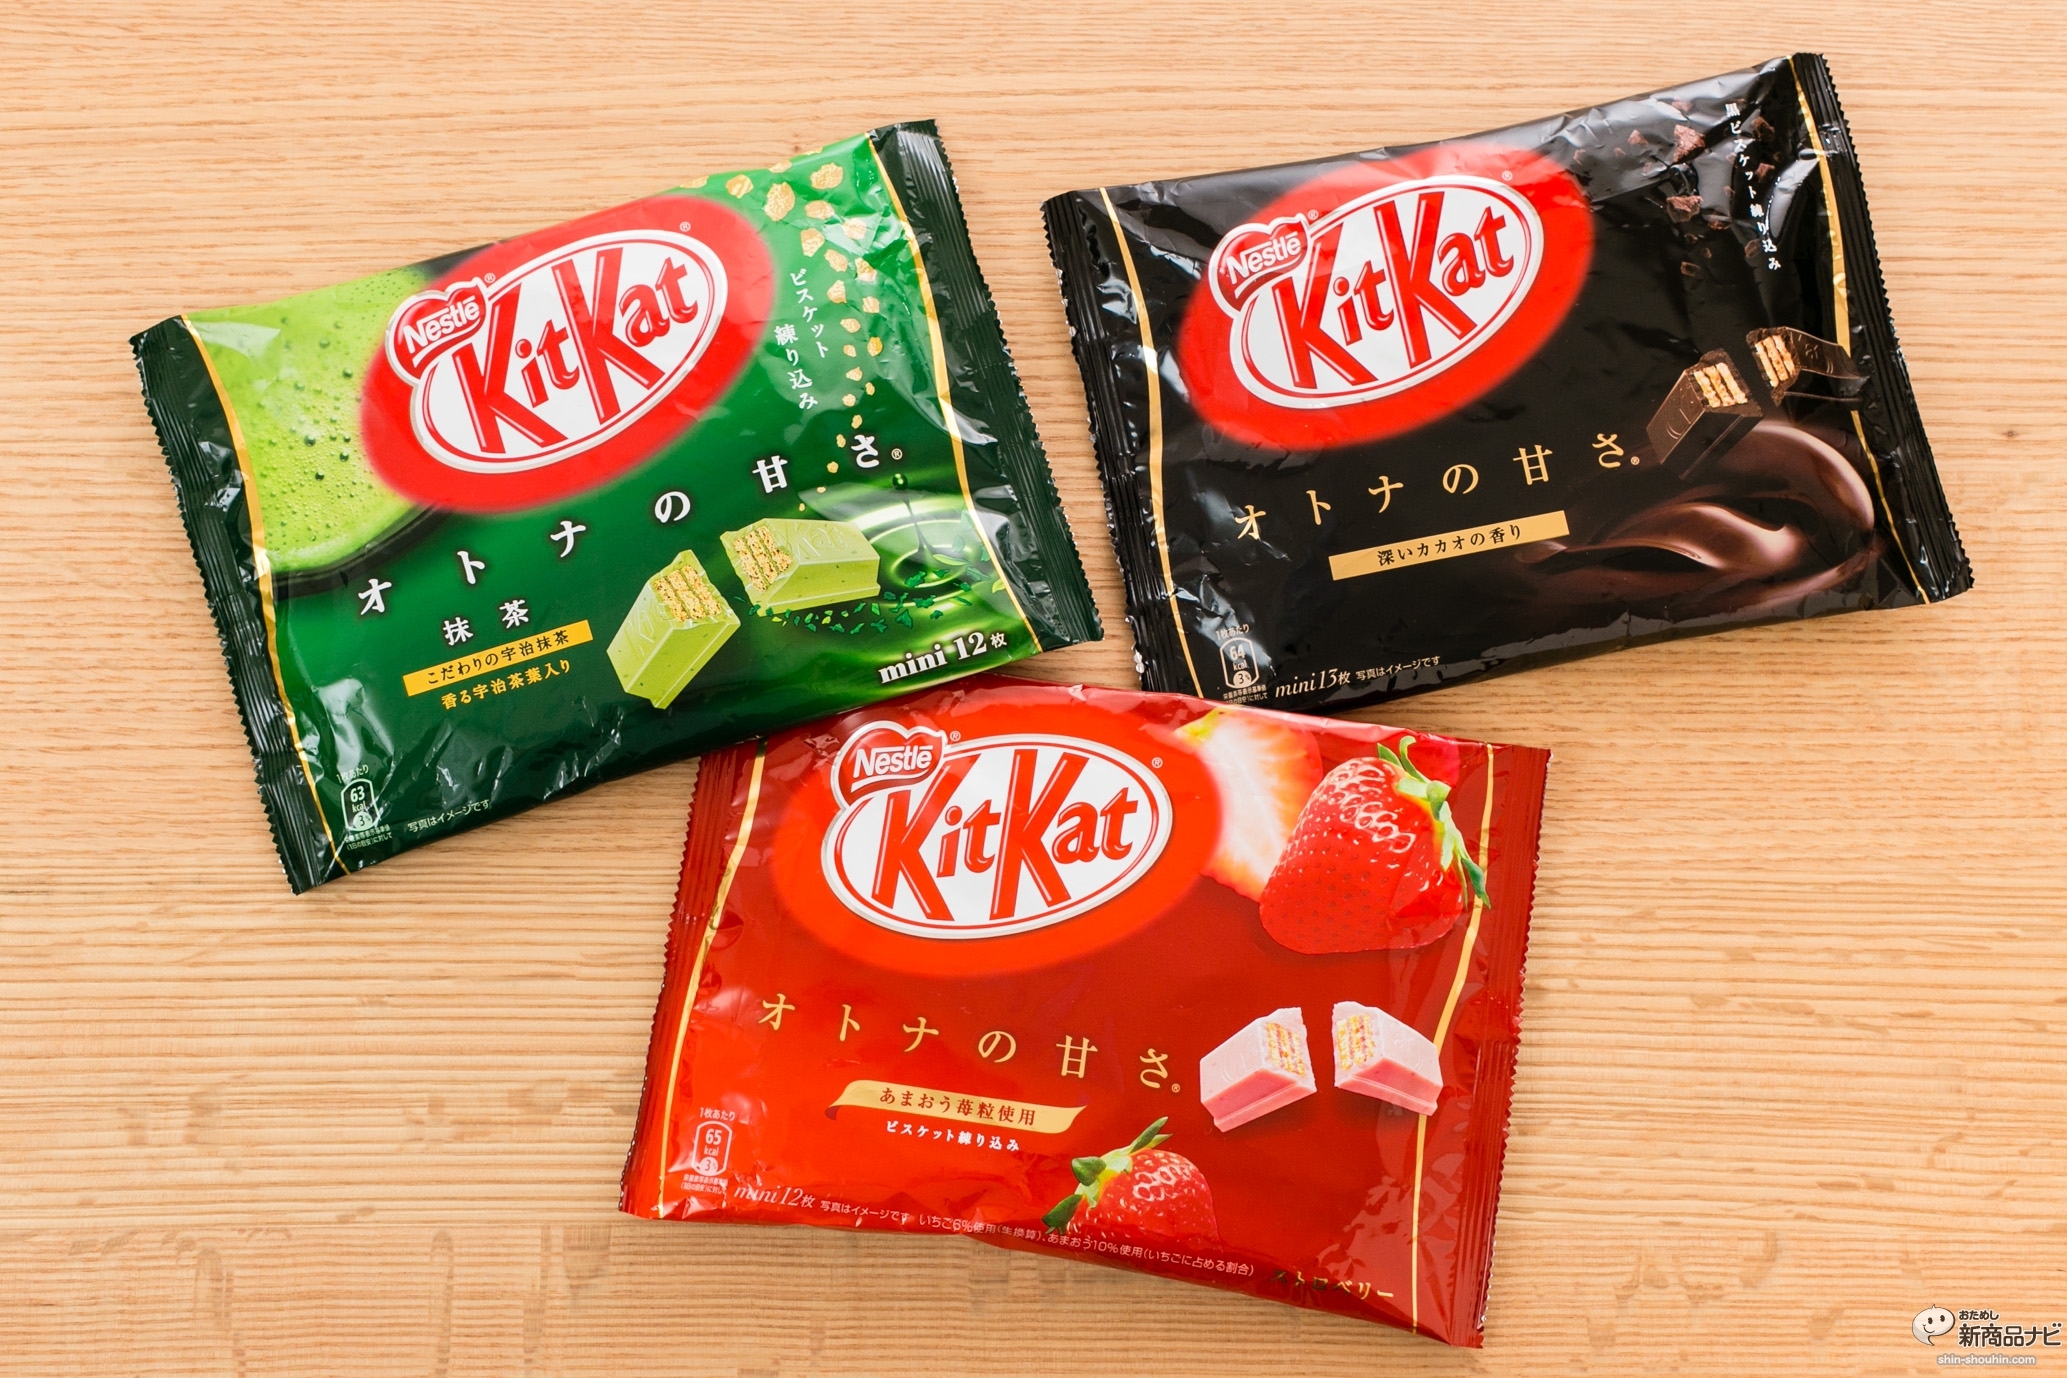 おためし新商品ナビ Blog Archive キットカット オトナの甘さ 全3種類がリニューアル 素材の味をしっかり感じる特別なチョコレートに